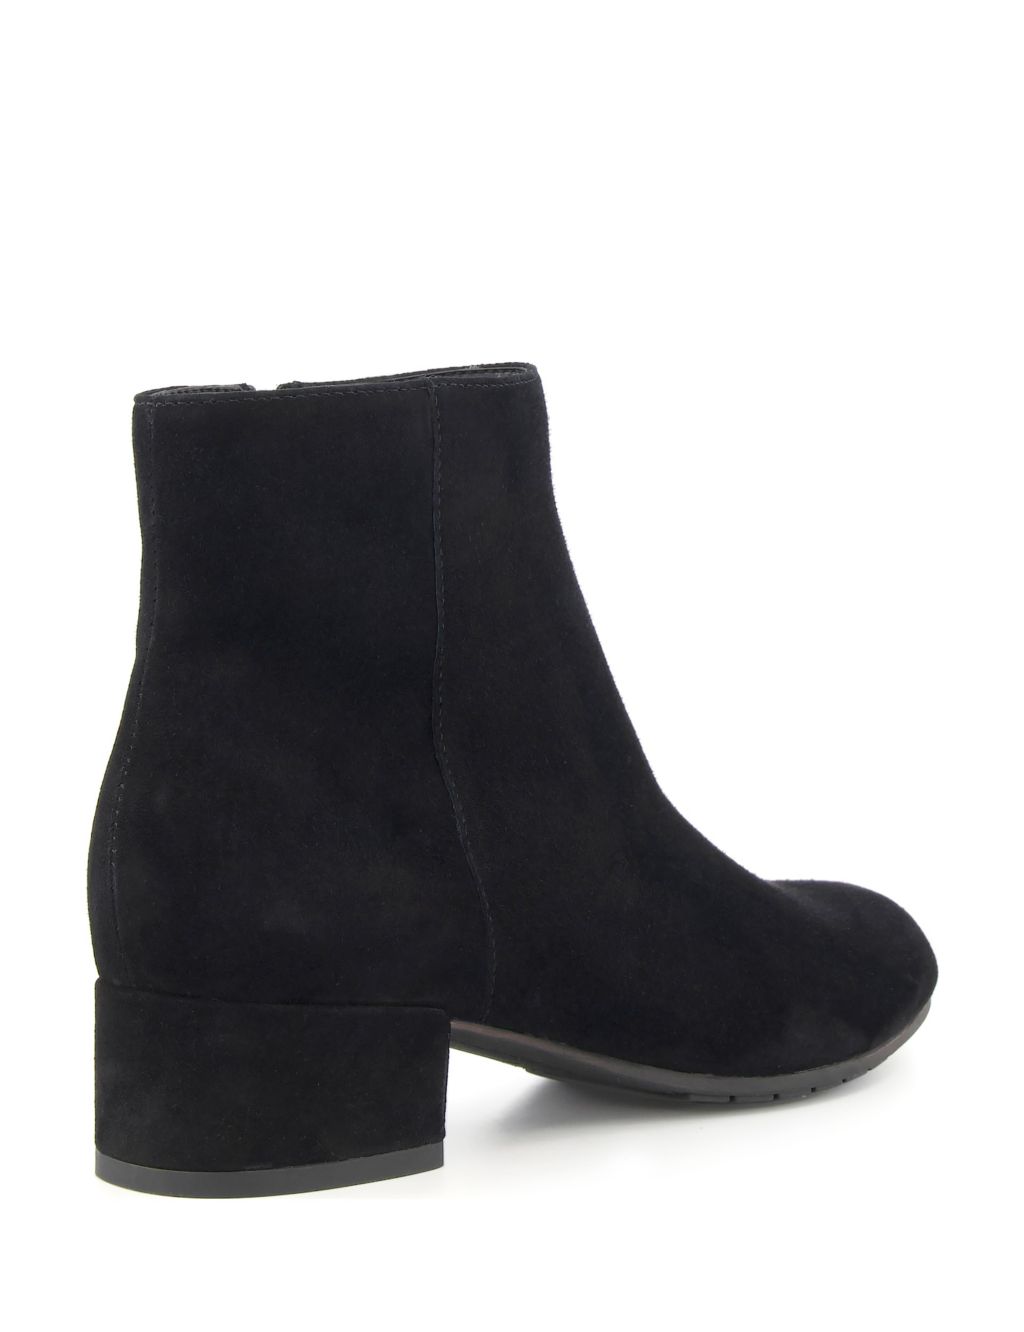 Buy Suede Block Heel Ankle Boots | Dune London | M&S